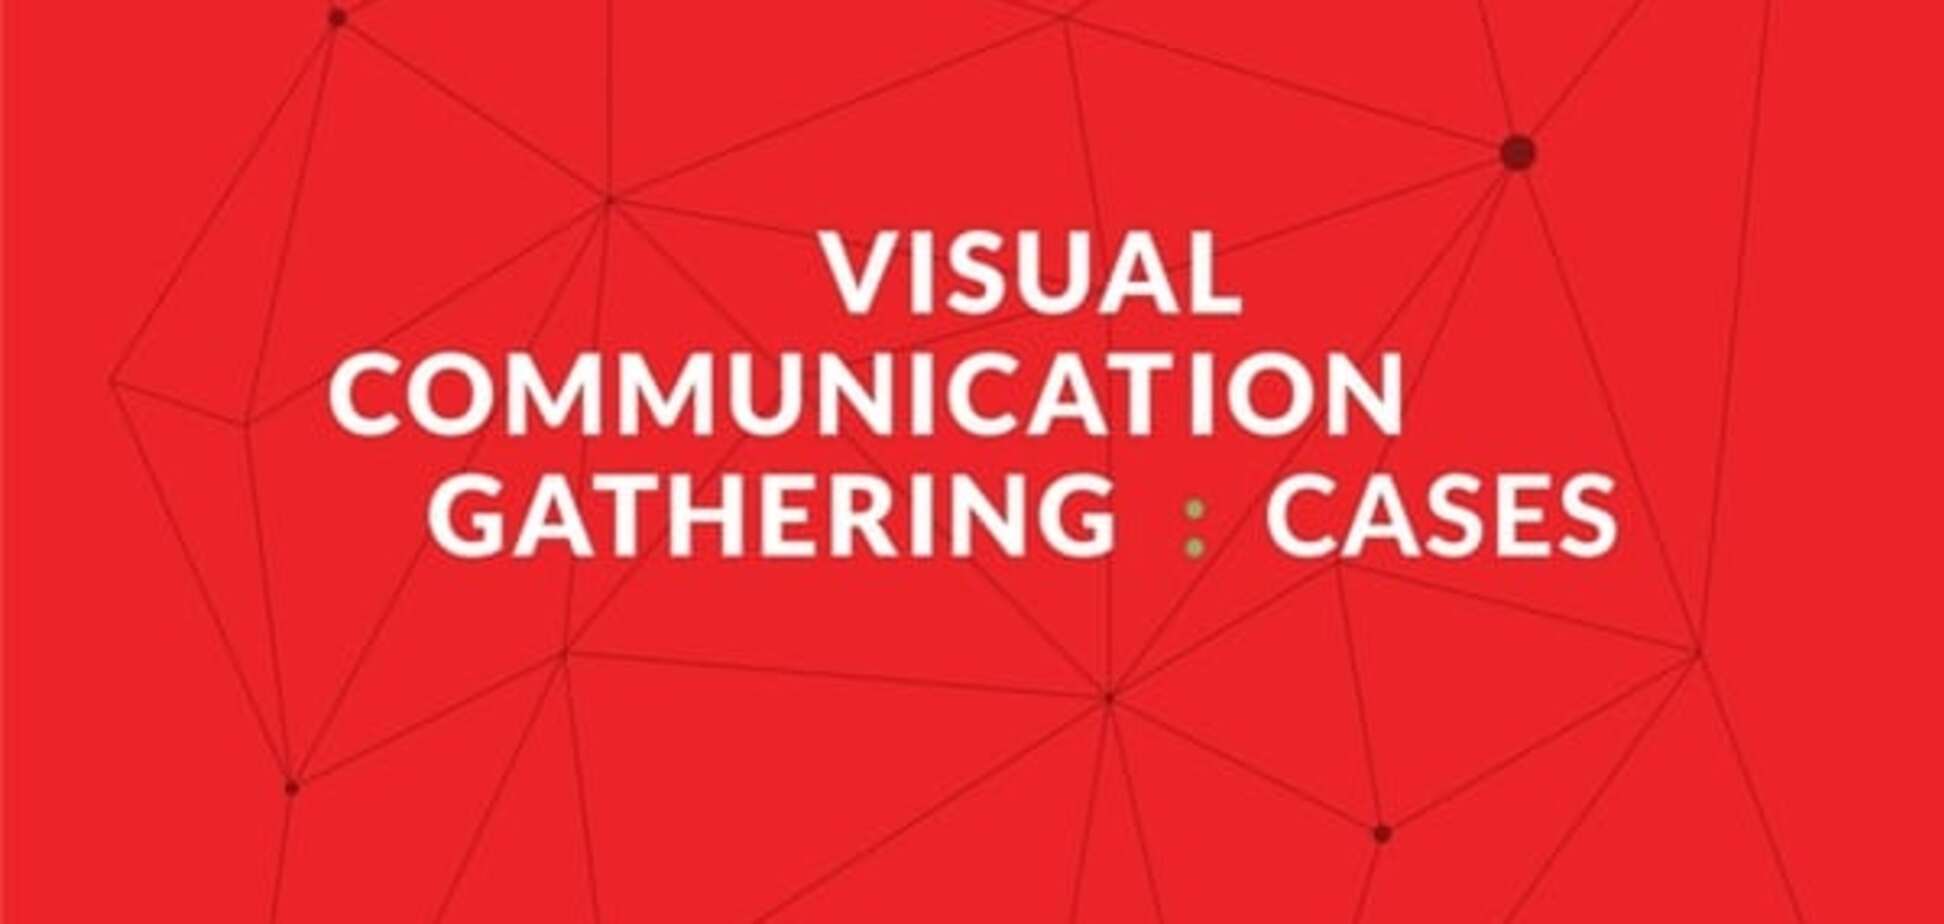 7 ноября, в FEDORIV Hub, пройдет Visual Communication Gathering: Cases